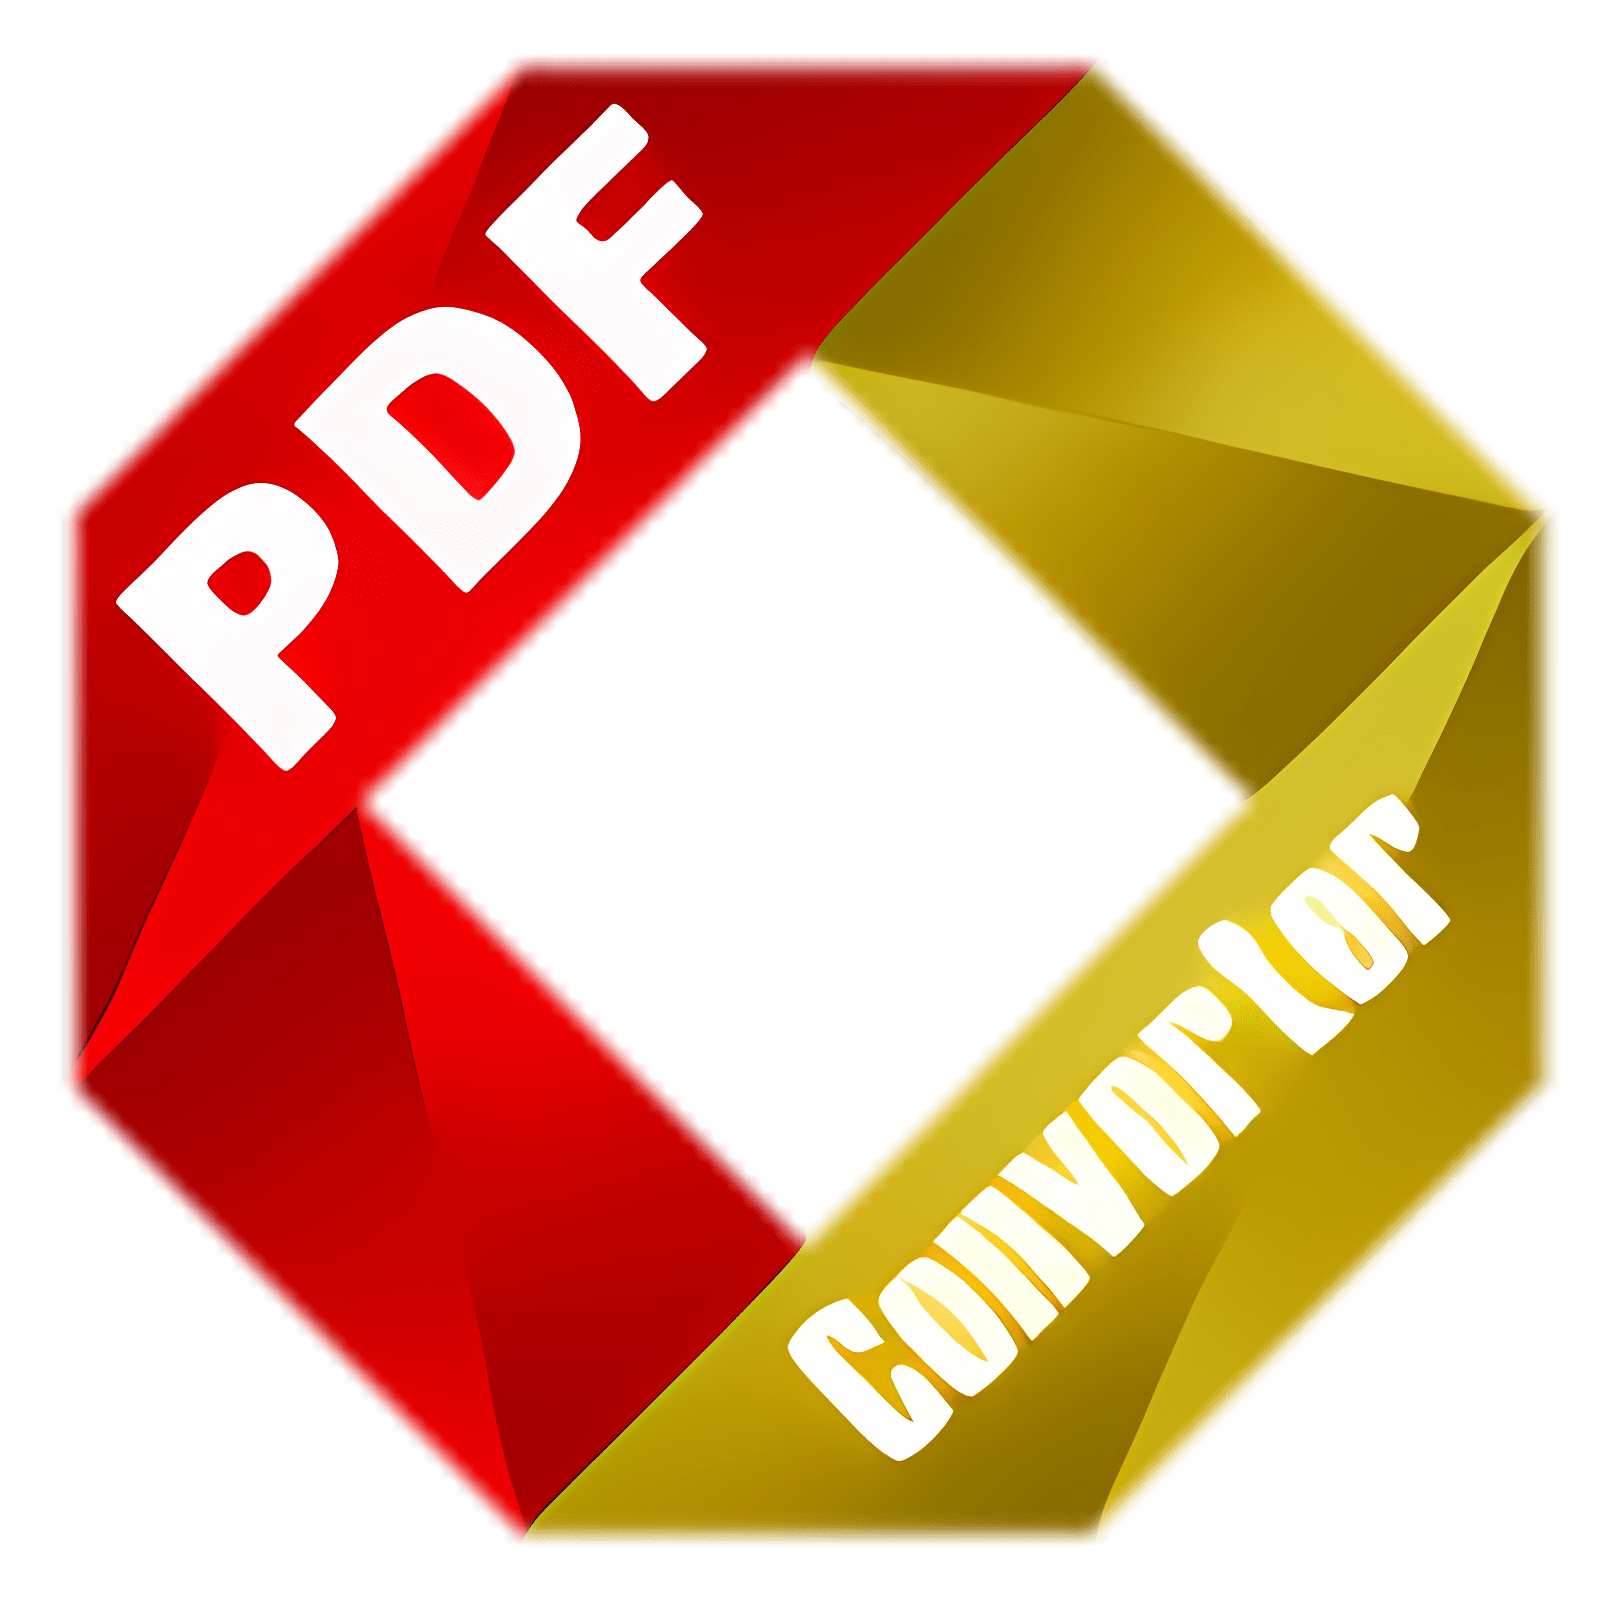 Descargar PDF Converter for Mac Instalar Más reciente Aplicación descargador